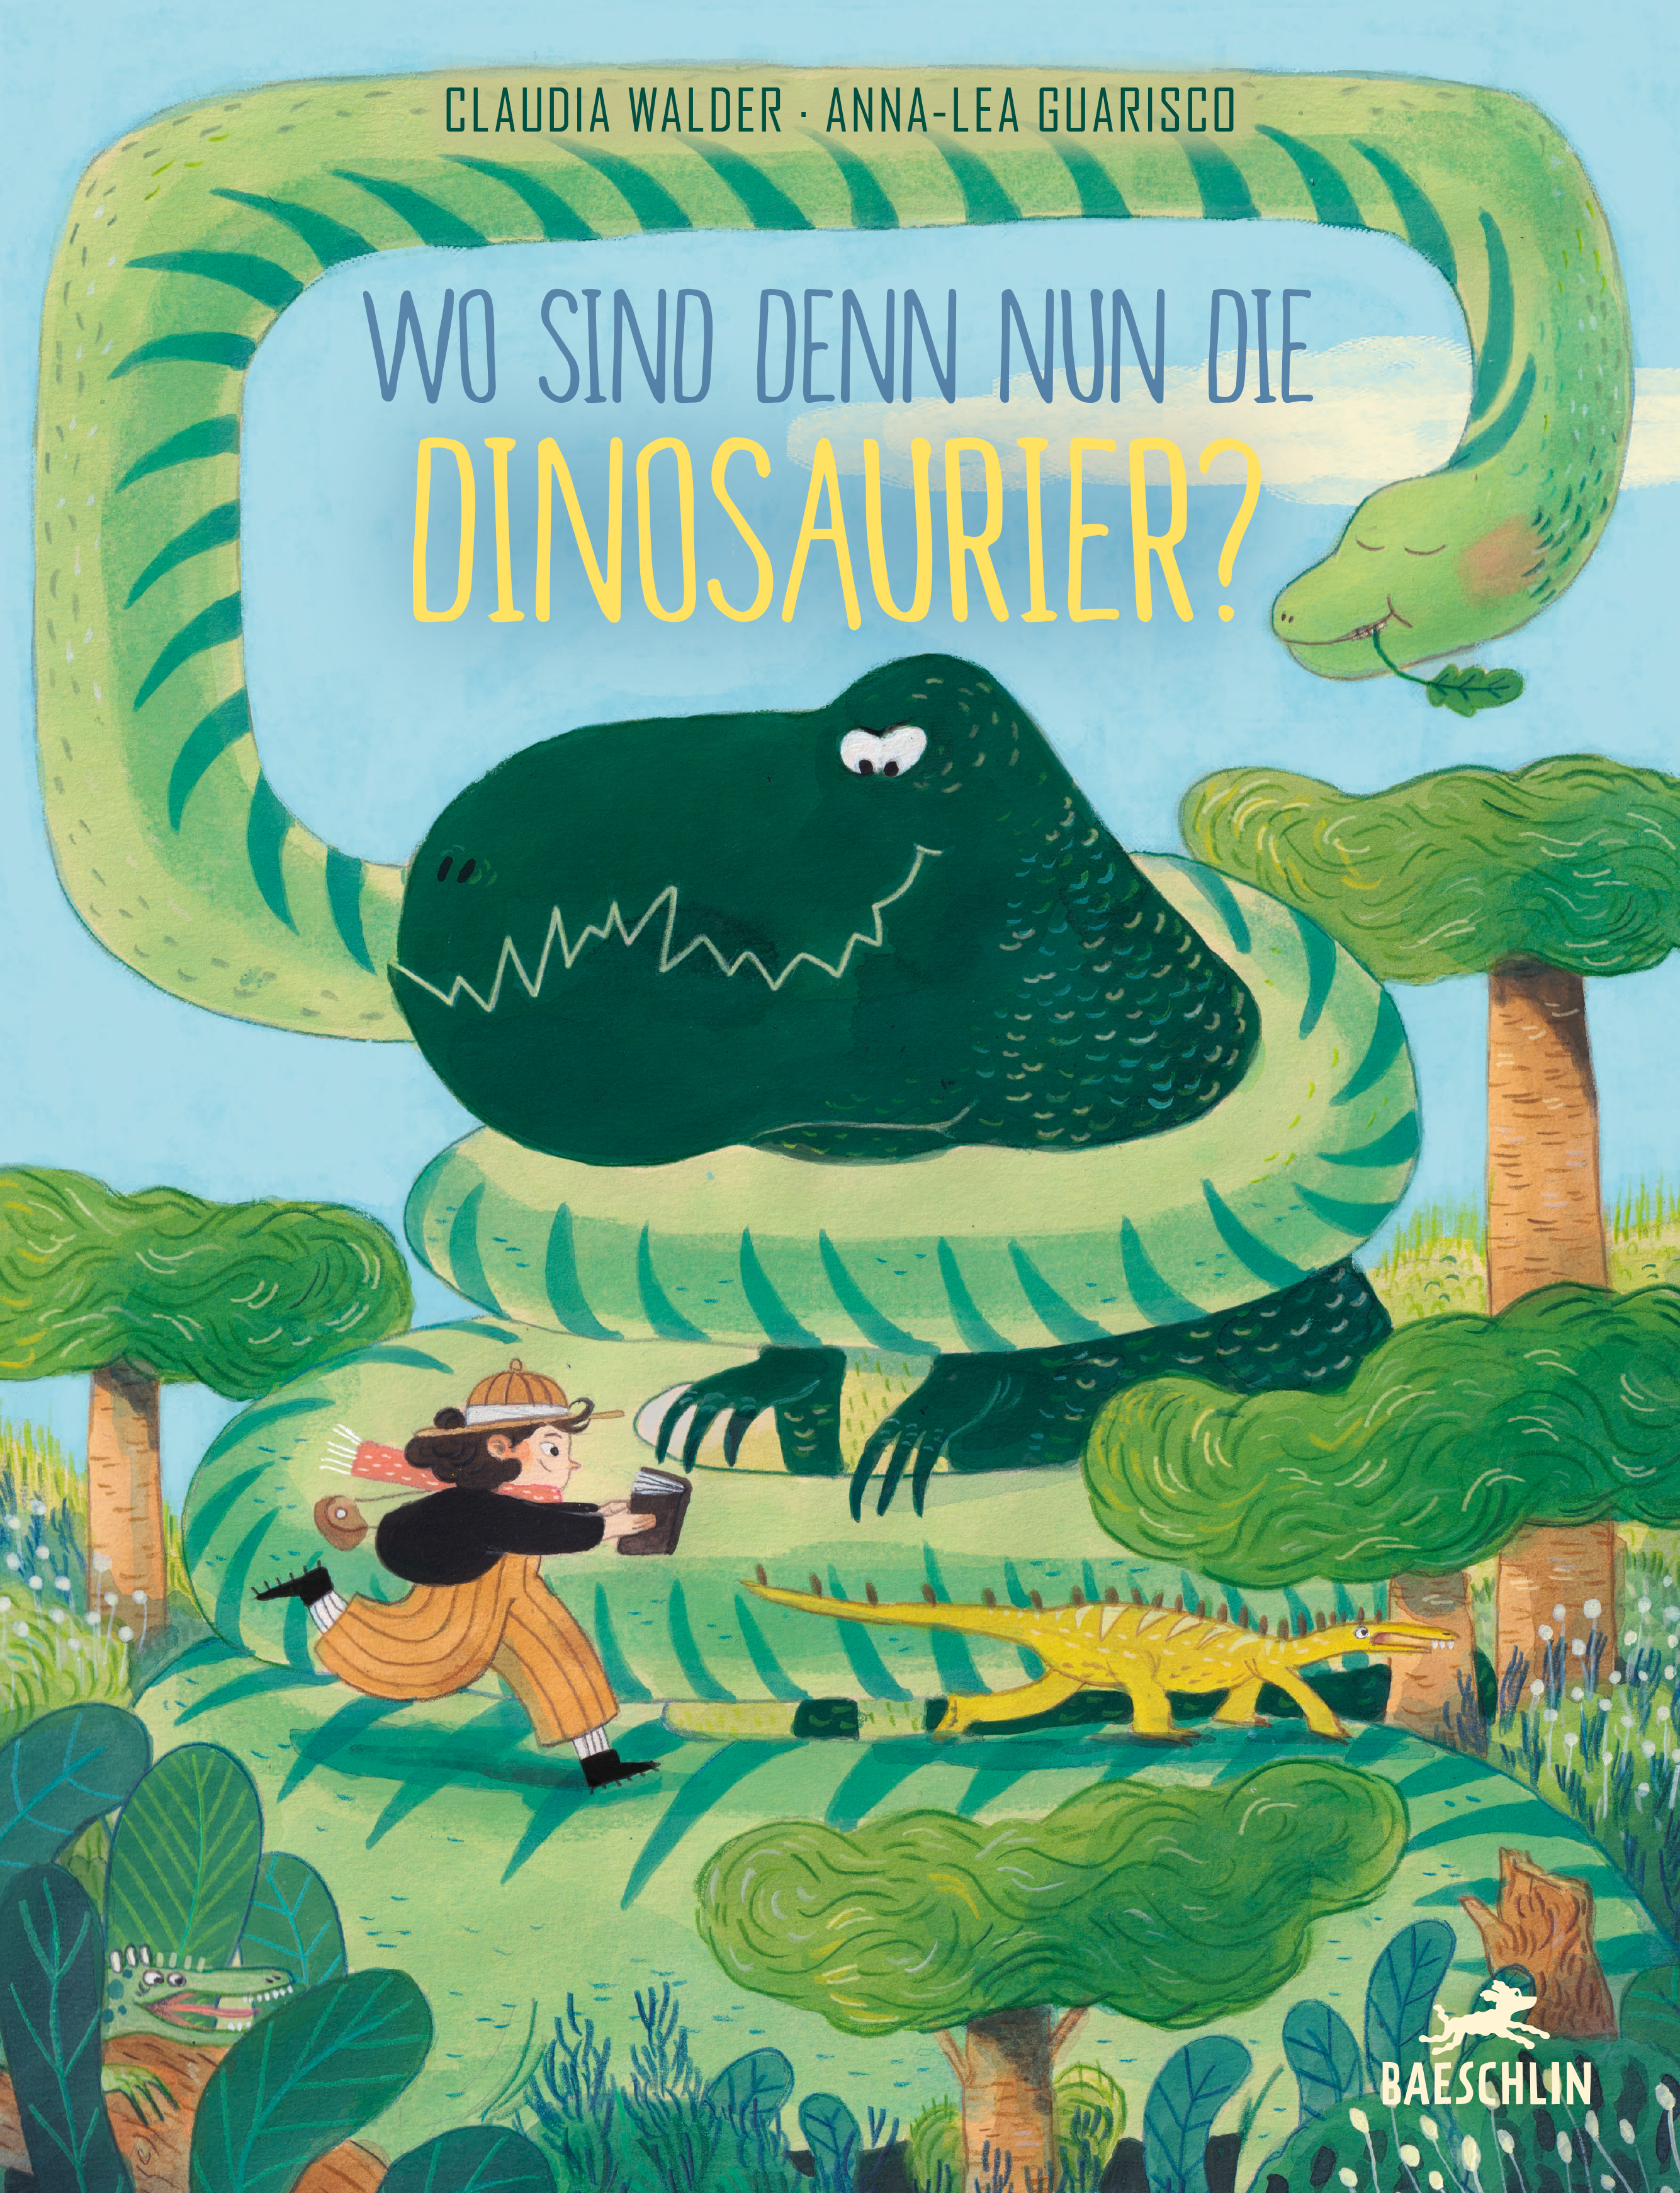 Cover des Bilderbuches für Kinder mit dem Titel "Wo sind denn nur die Dinosaurier?". Auf dem Cover ist ein Mände zu sehen, das einem kleinen Dino hinterher rennt. Über ihr ist ein grosser Dinosaurier, der von einer Schlange umwickelt ist.